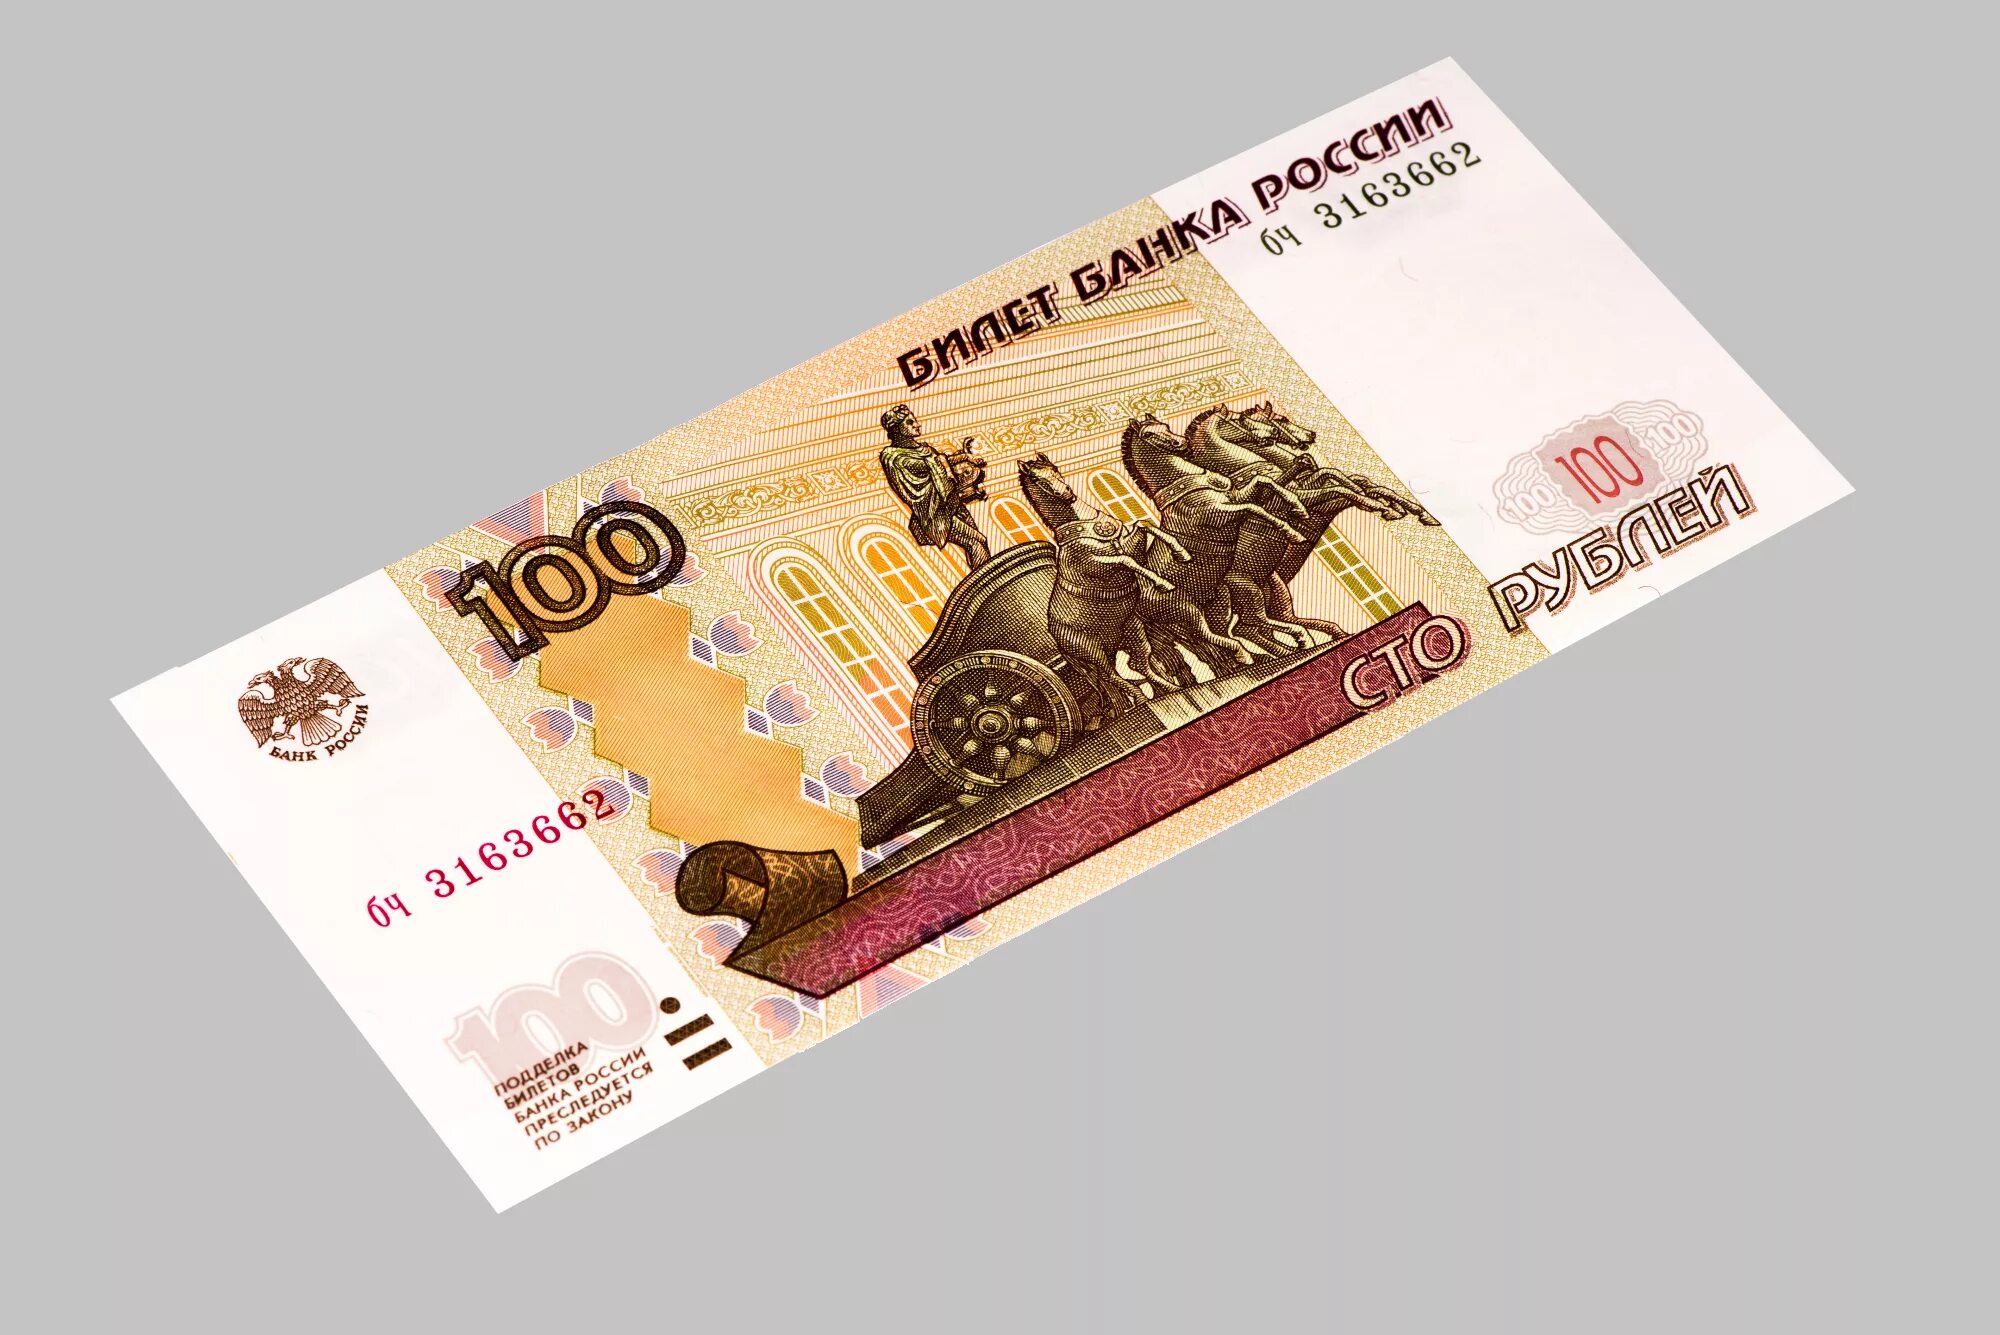 Имя сотка. 100 Рублей. Купюра 100 рублей. Банкнота 100 рублей. СТО рублей купюра.